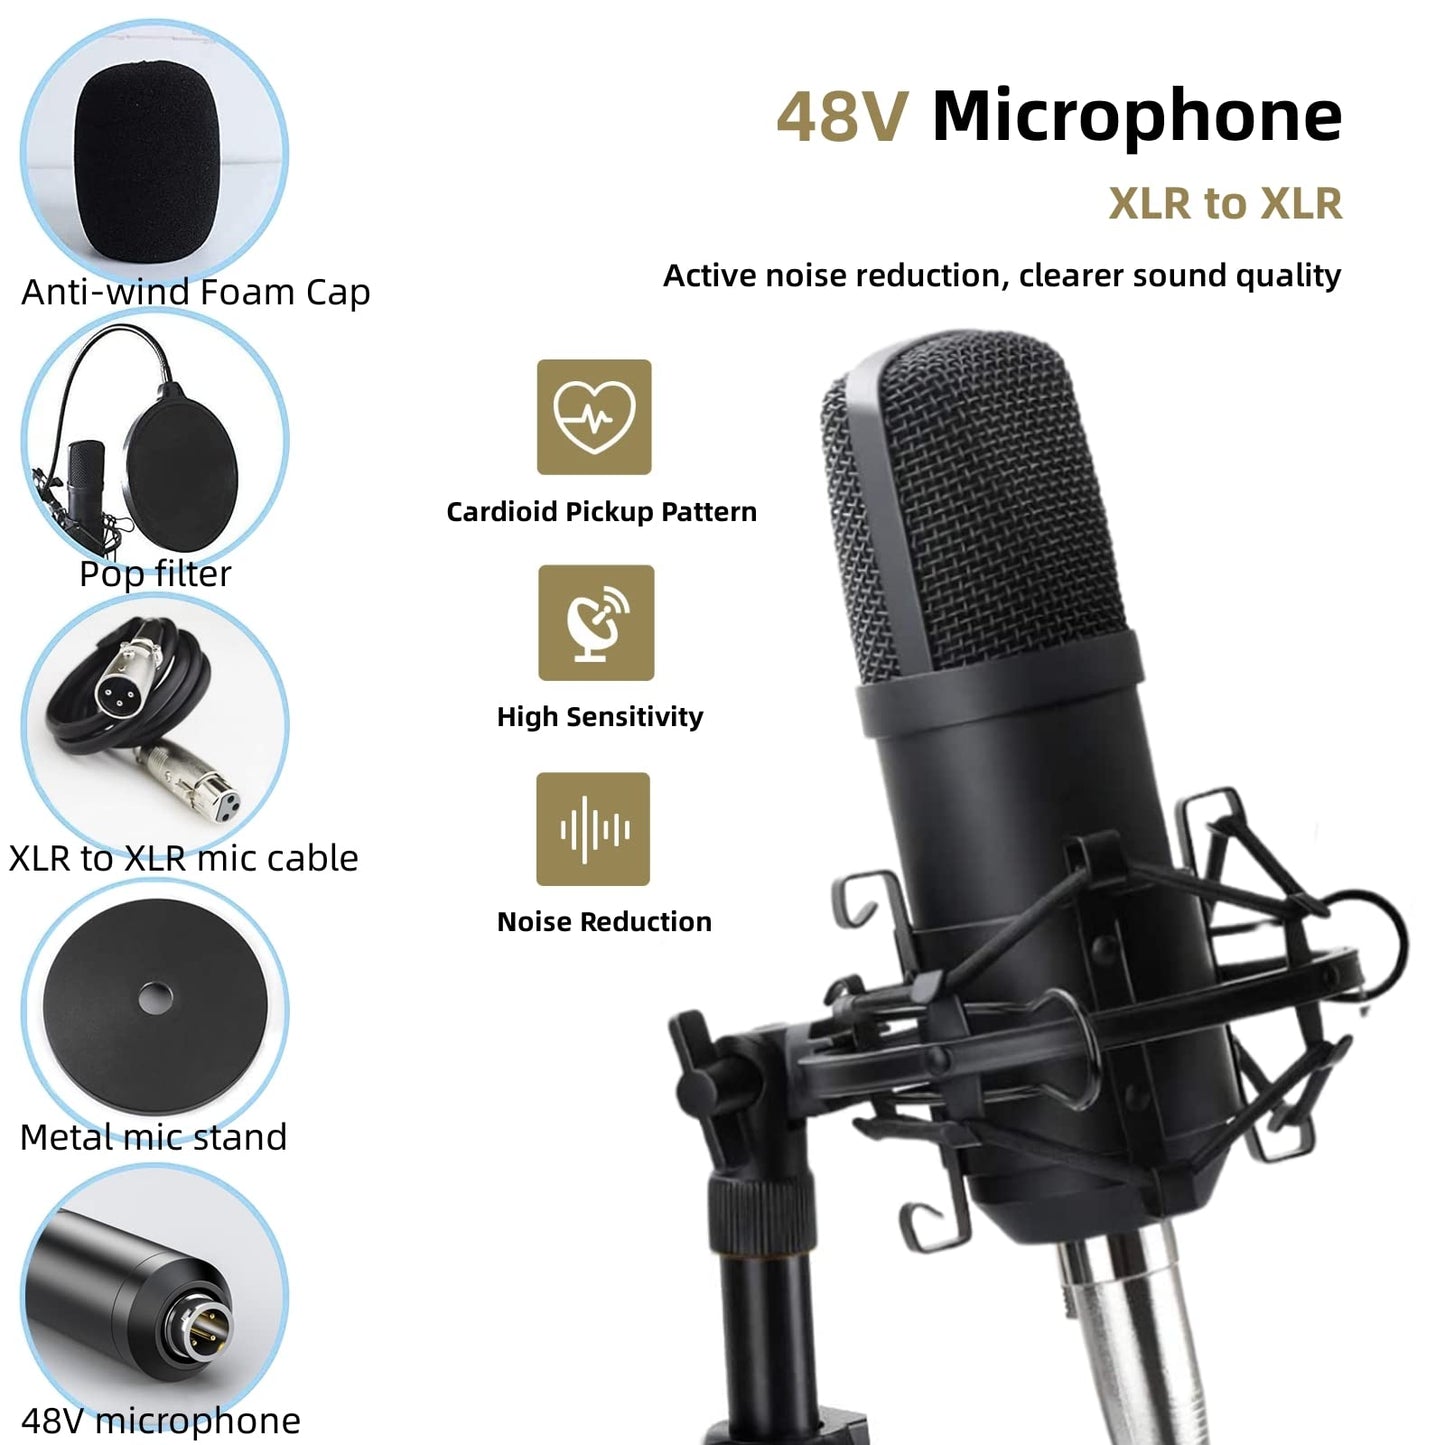 Sktome M300-ZM01 Paquete de micrófono XLR, 48 V, soporte ajustable, reducción de ruido DSP dual, 4 cambiadores de voz, iluminación RGB, garantía de 12 meses